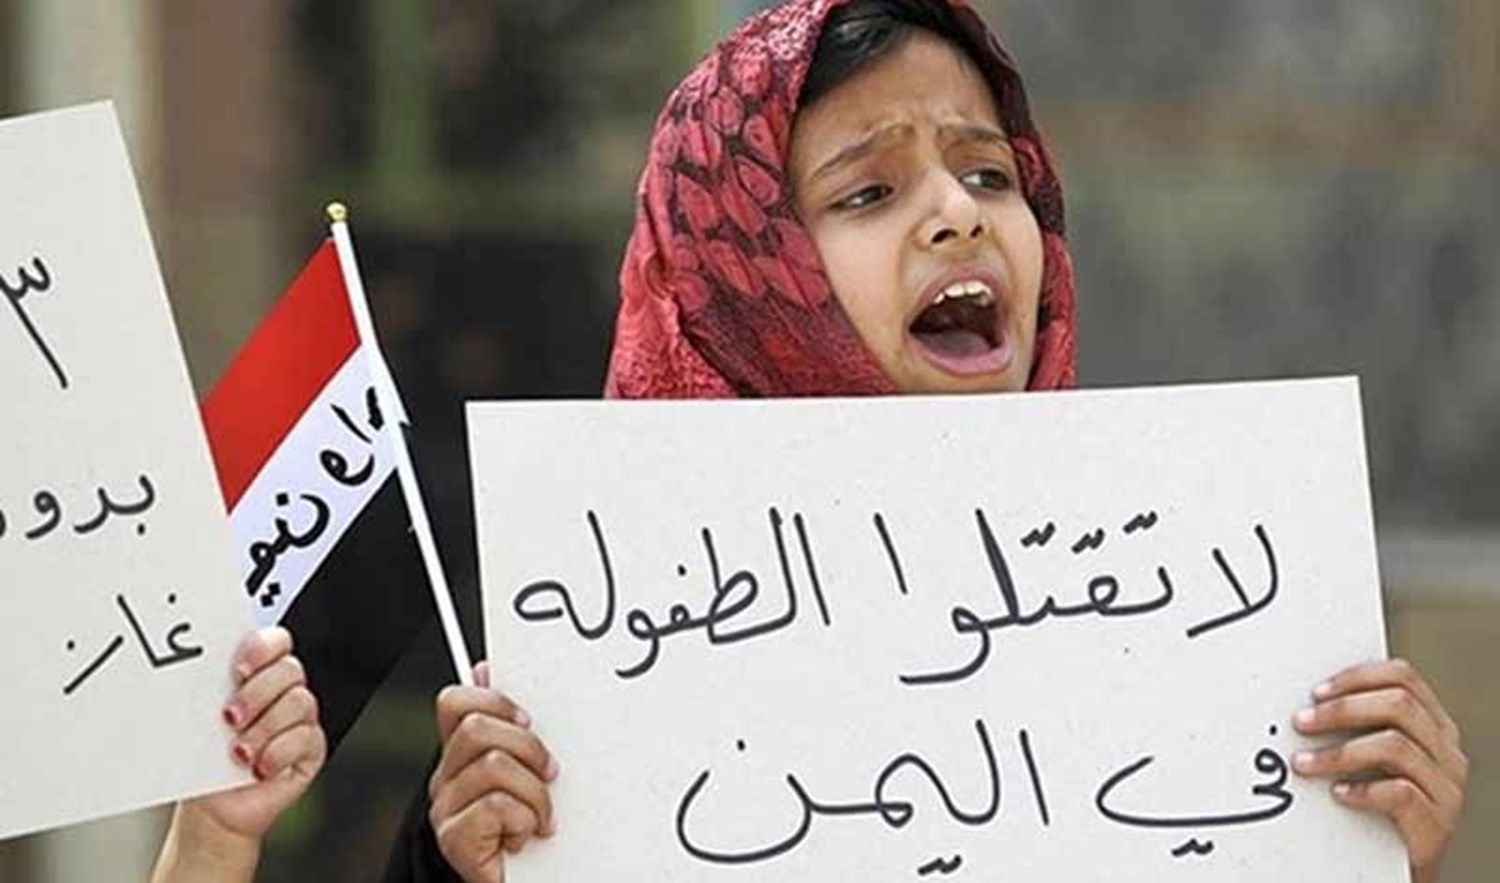 ائتلاف 14 فبراير: «غوتيريش» يثبت تواطئه مع آل سعود وشراكته في قتل الأطفال اليمنيّين